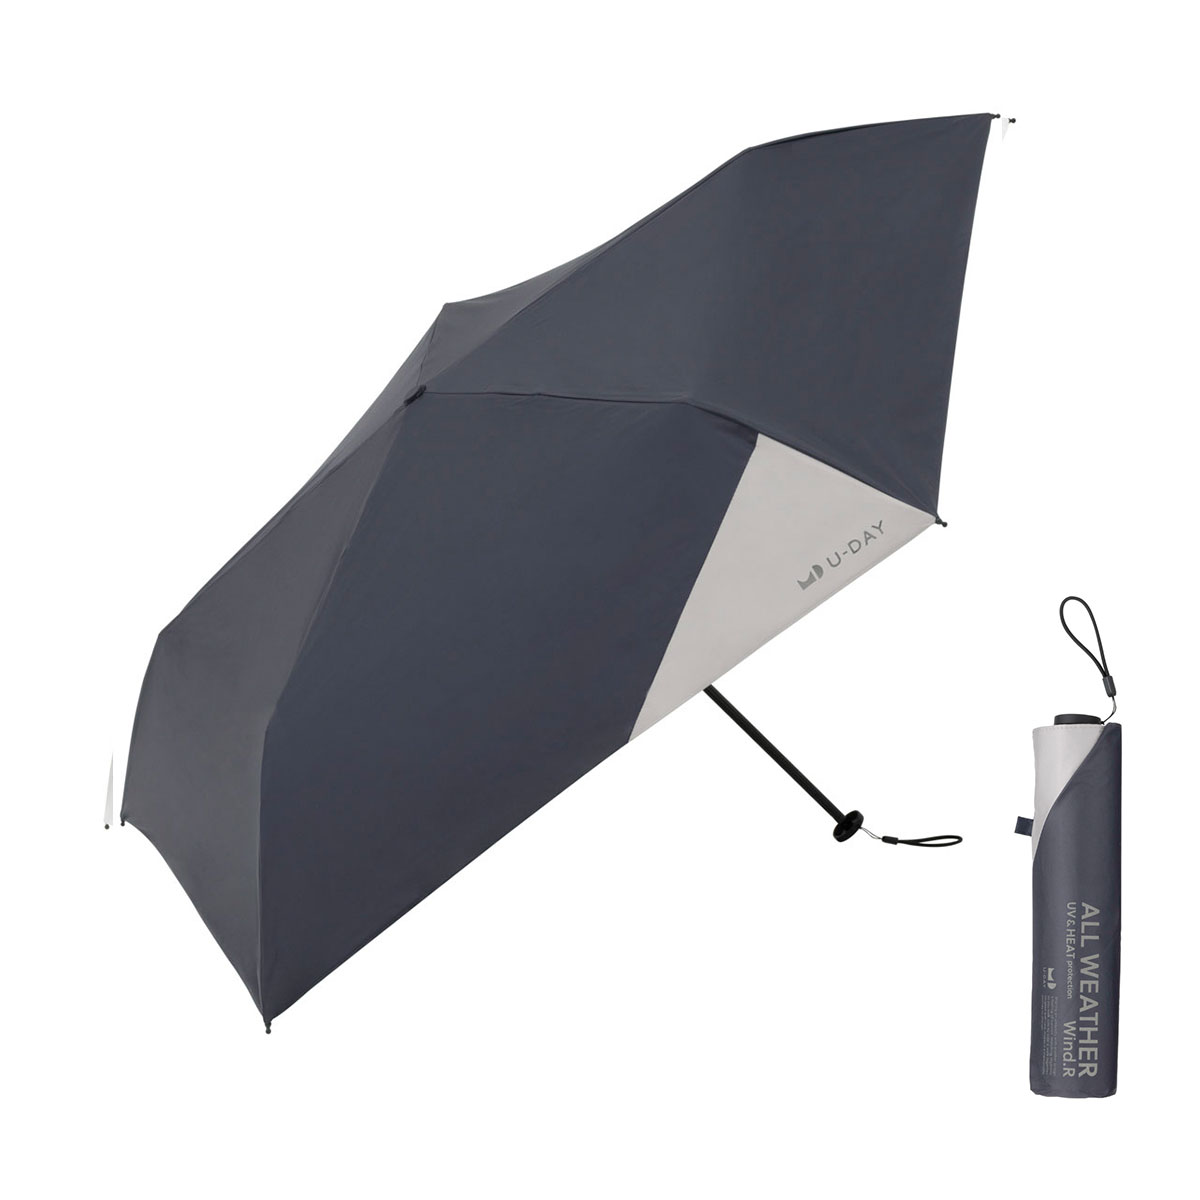 U-DAY 折りたたみ傘 傘 軽量 軽い 晴雨兼用 メンズ レディース 雨傘 日傘 ユーデイ ブラン...